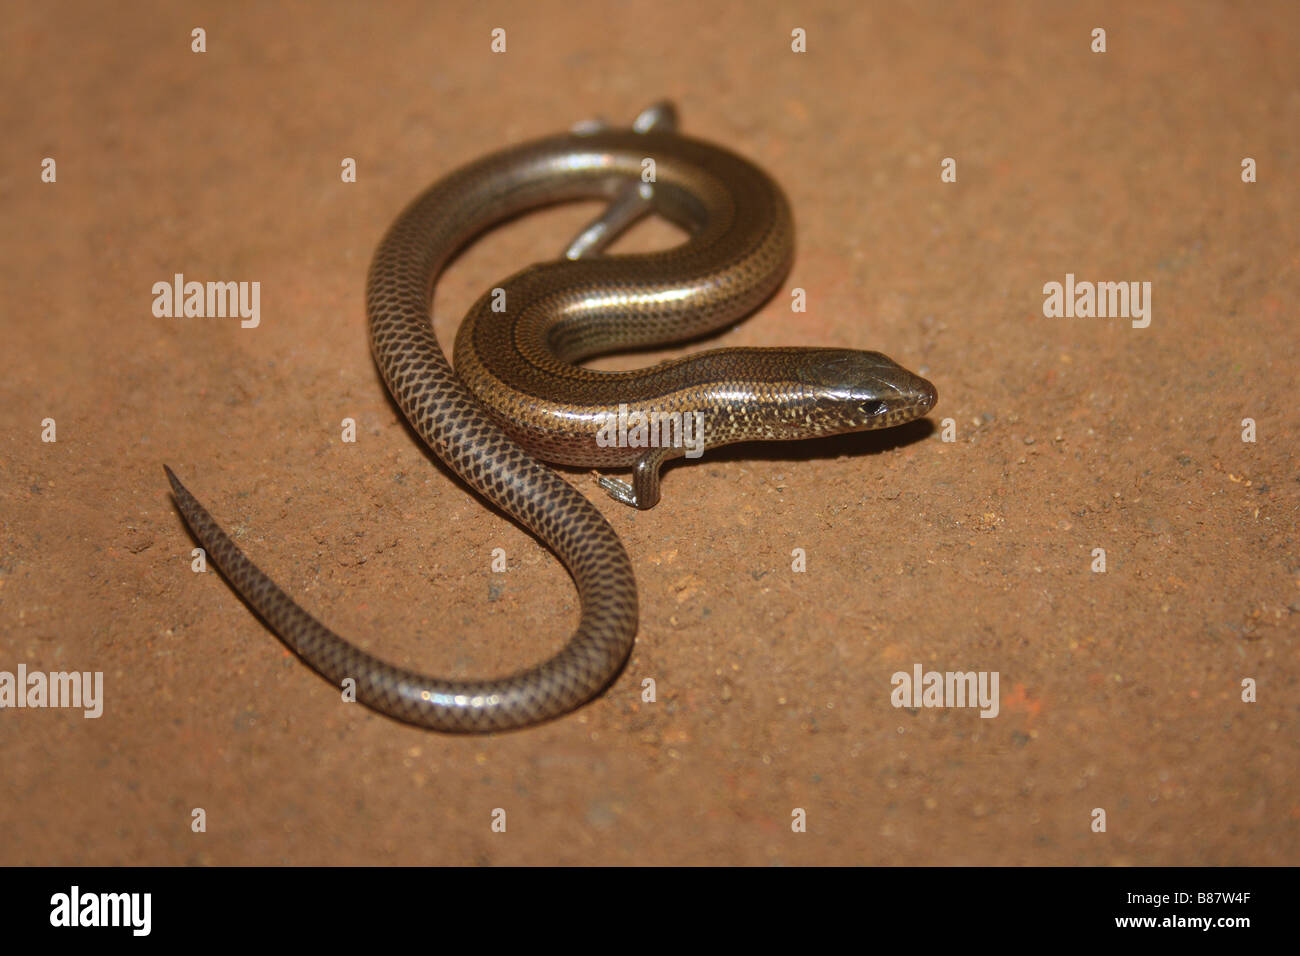 Serpiente común Skink, Lygosoma punctata, Marol, Andheri, Mumbai. Foto de stock